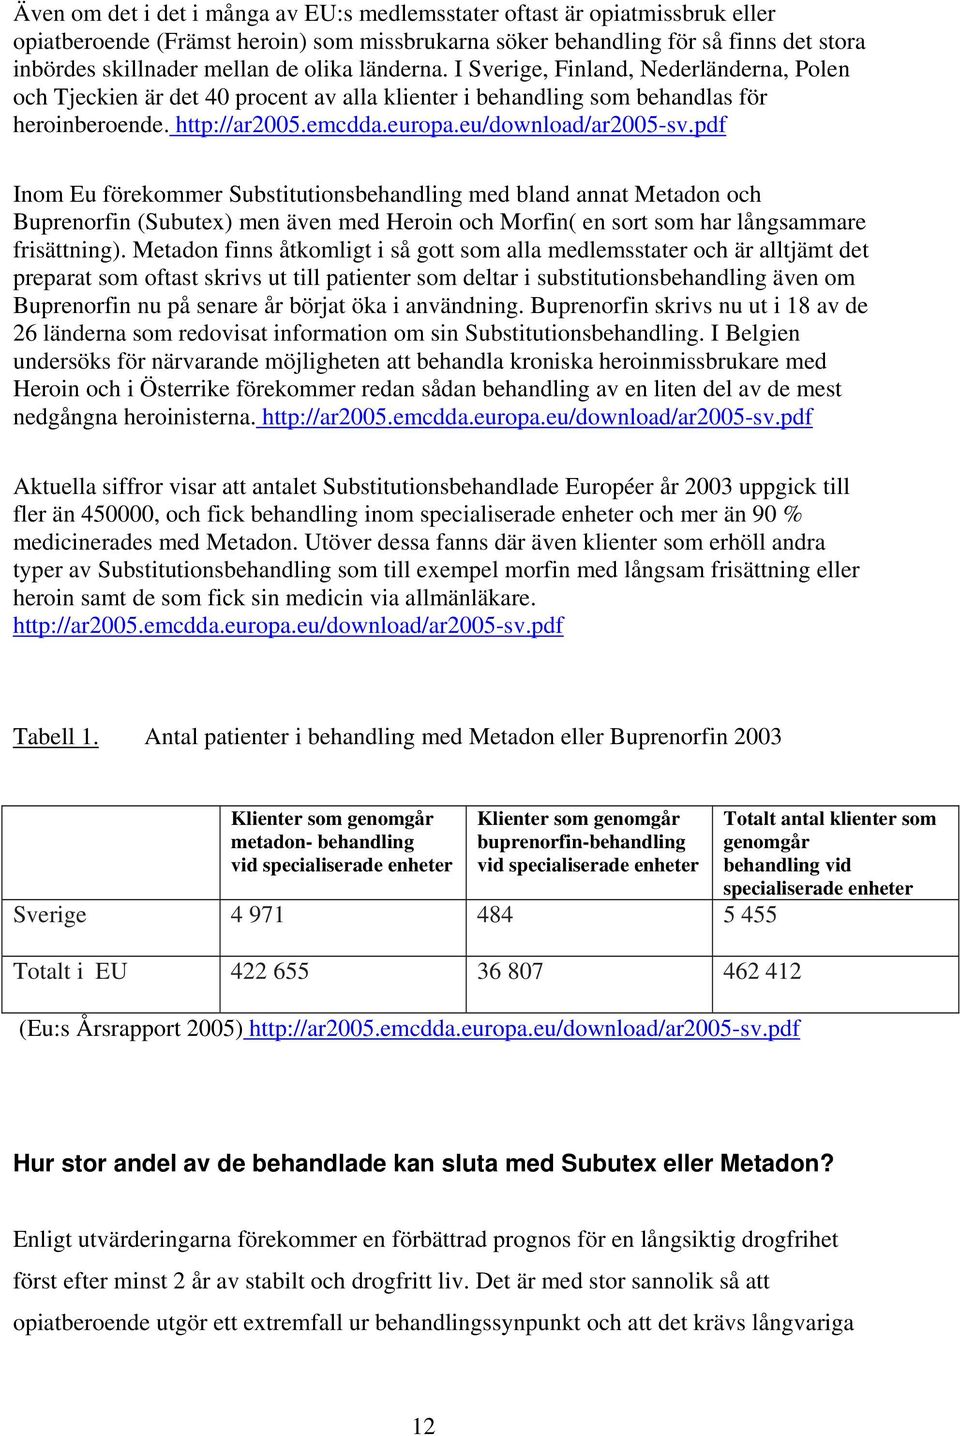 eu/download/ar2005-sv.pdf Inom Eu förekommer Substitutionsbehandling med bland annat Metadon och Buprenorfin (Subutex) men även med Heroin och Morfin( en sort som har långsammare frisättning).